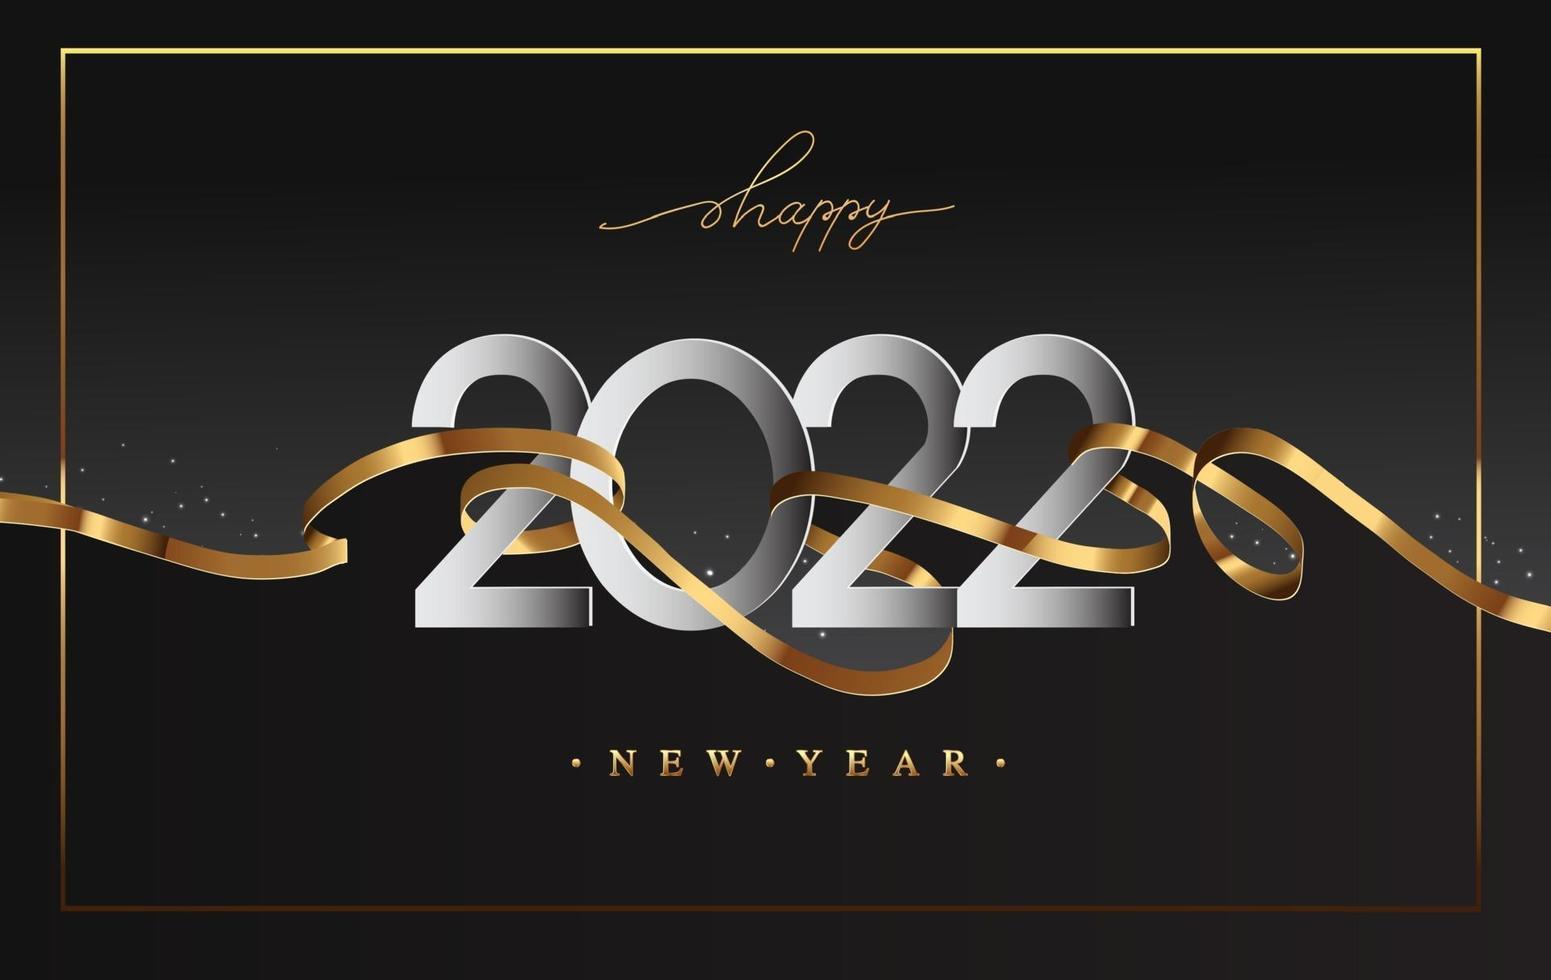 nouvel an 2022 - carte de voeux avec ruban doré vecteur